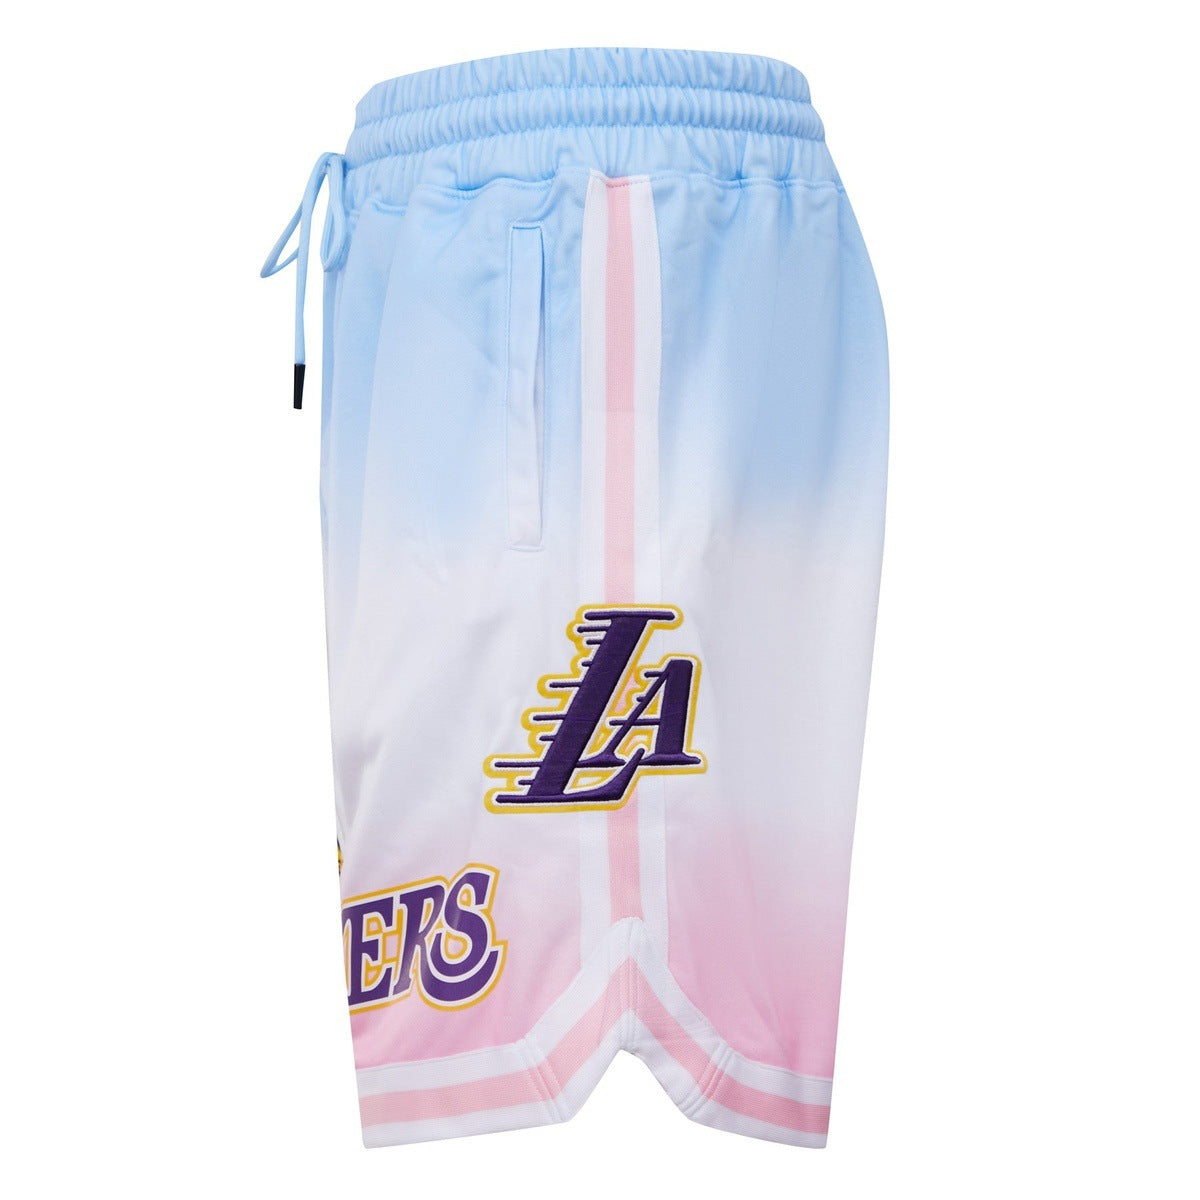 la lakers shorts